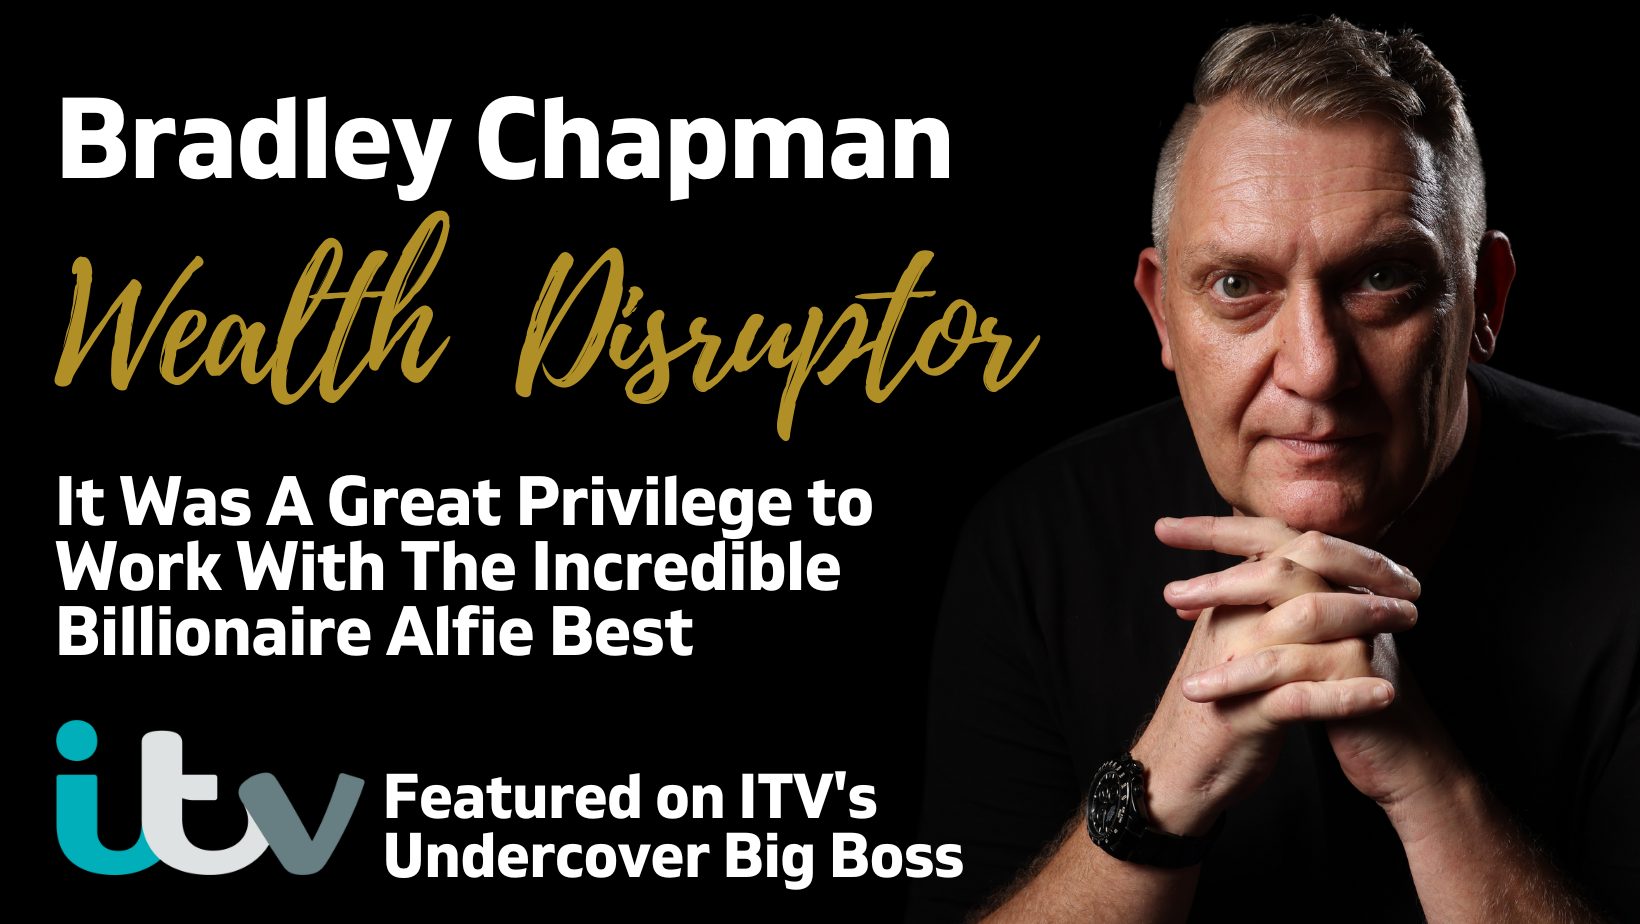 Bradley Chapman on ITV Undercover Big Boss With Billionaire Alfie Best